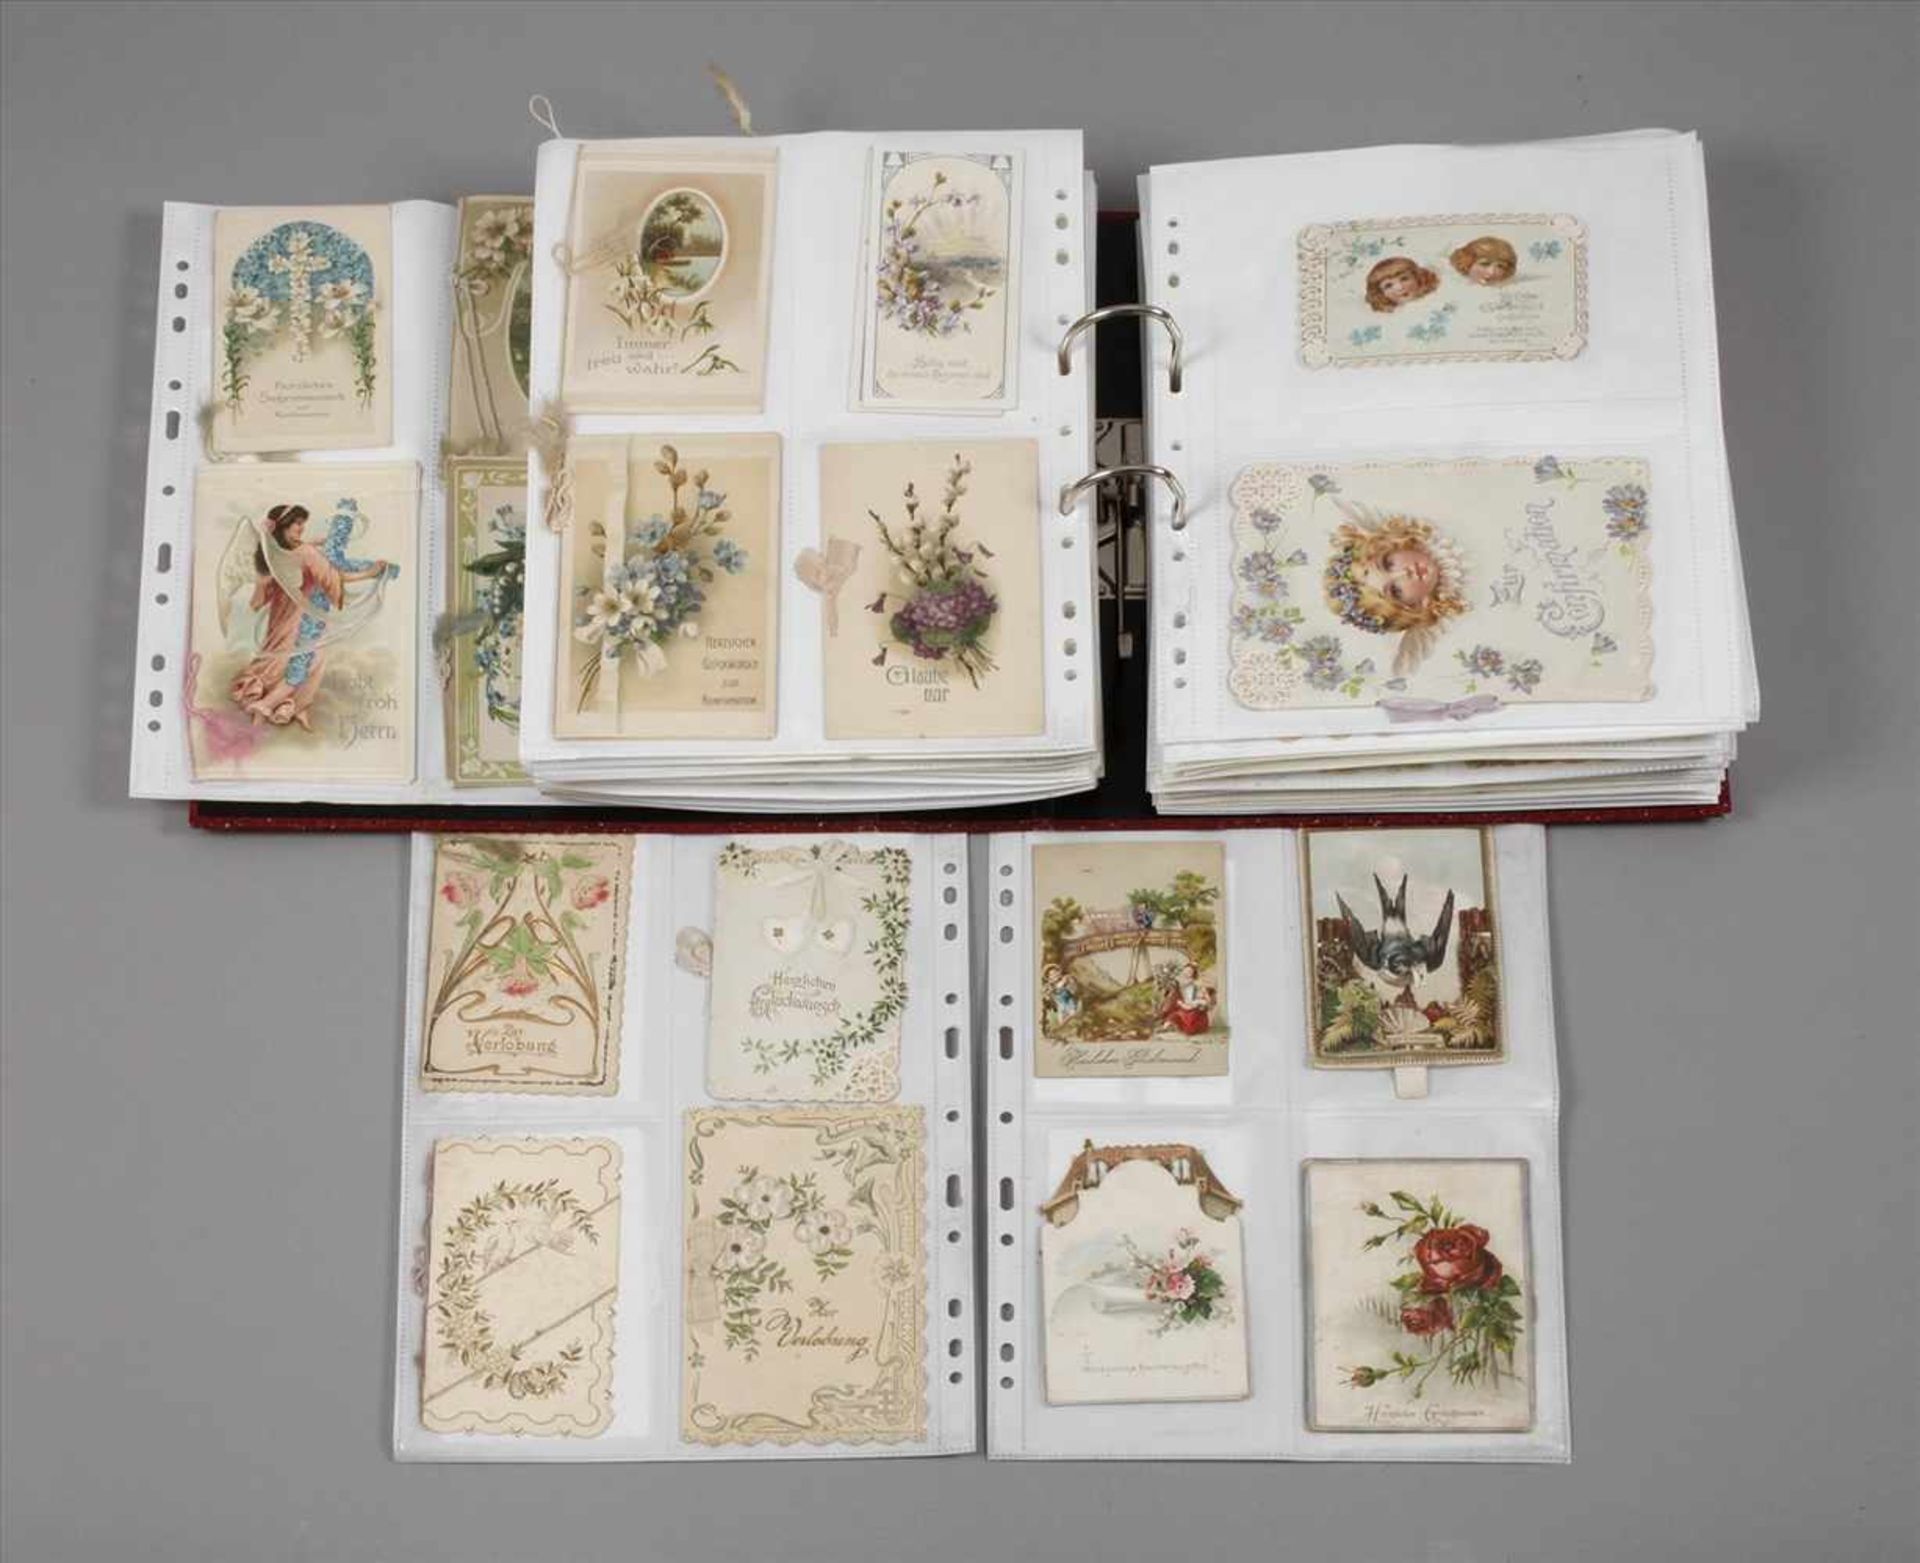 Sammlung Anlasskarten um 1900über 250 Stück, geprägte oder reich gestaltete Anlasskarten, bspw.